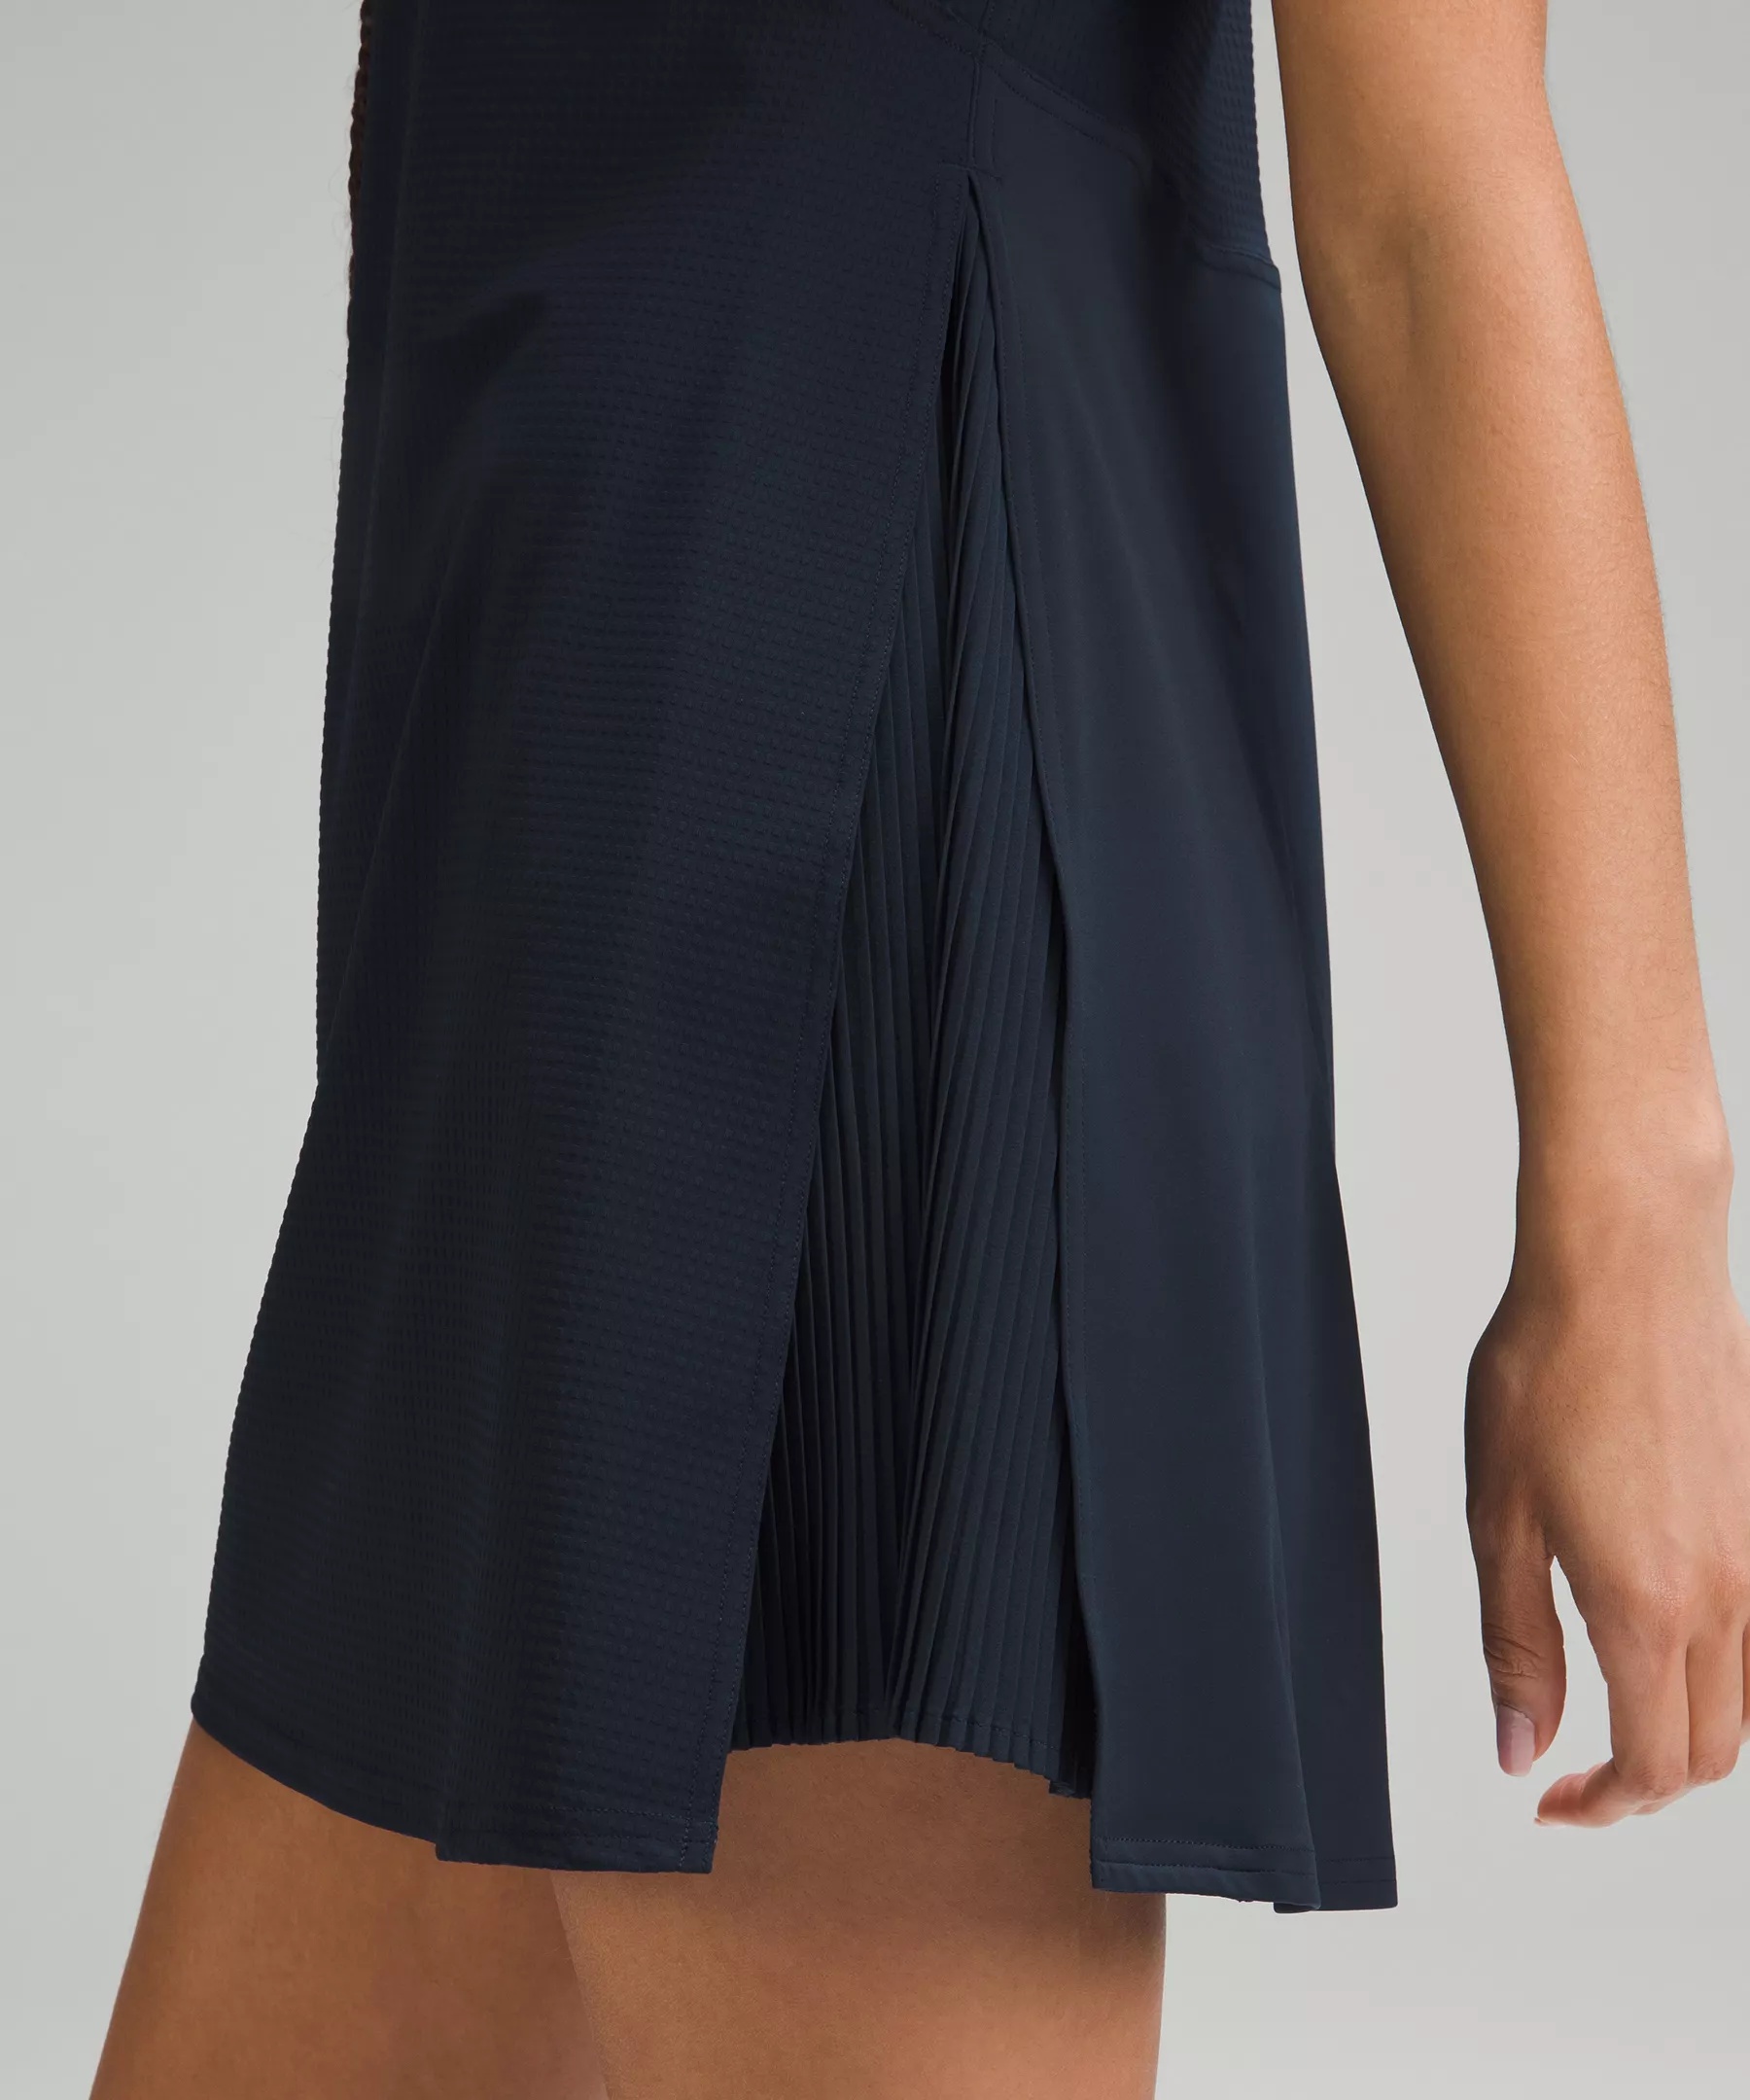 Grid-Texture Sleeveless Linerless Tennis Dress - 4